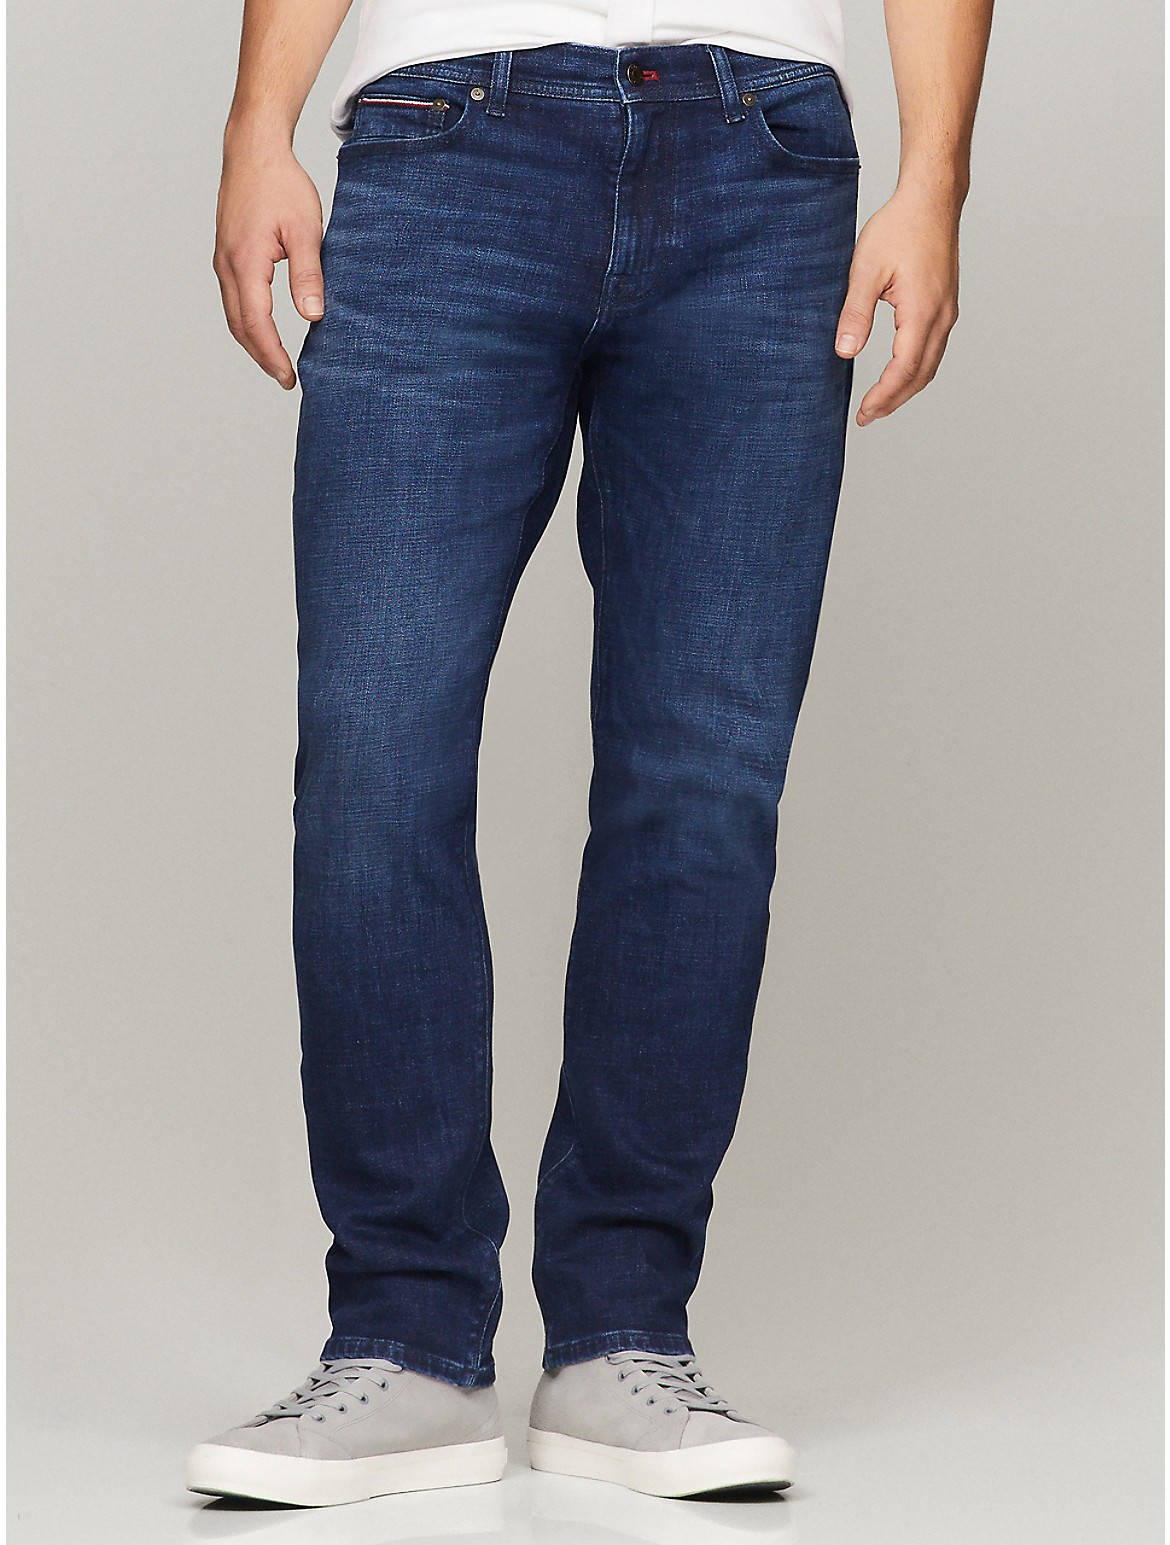 Tommy Hilfiger Men's Straight Fit Dark Wash Jean